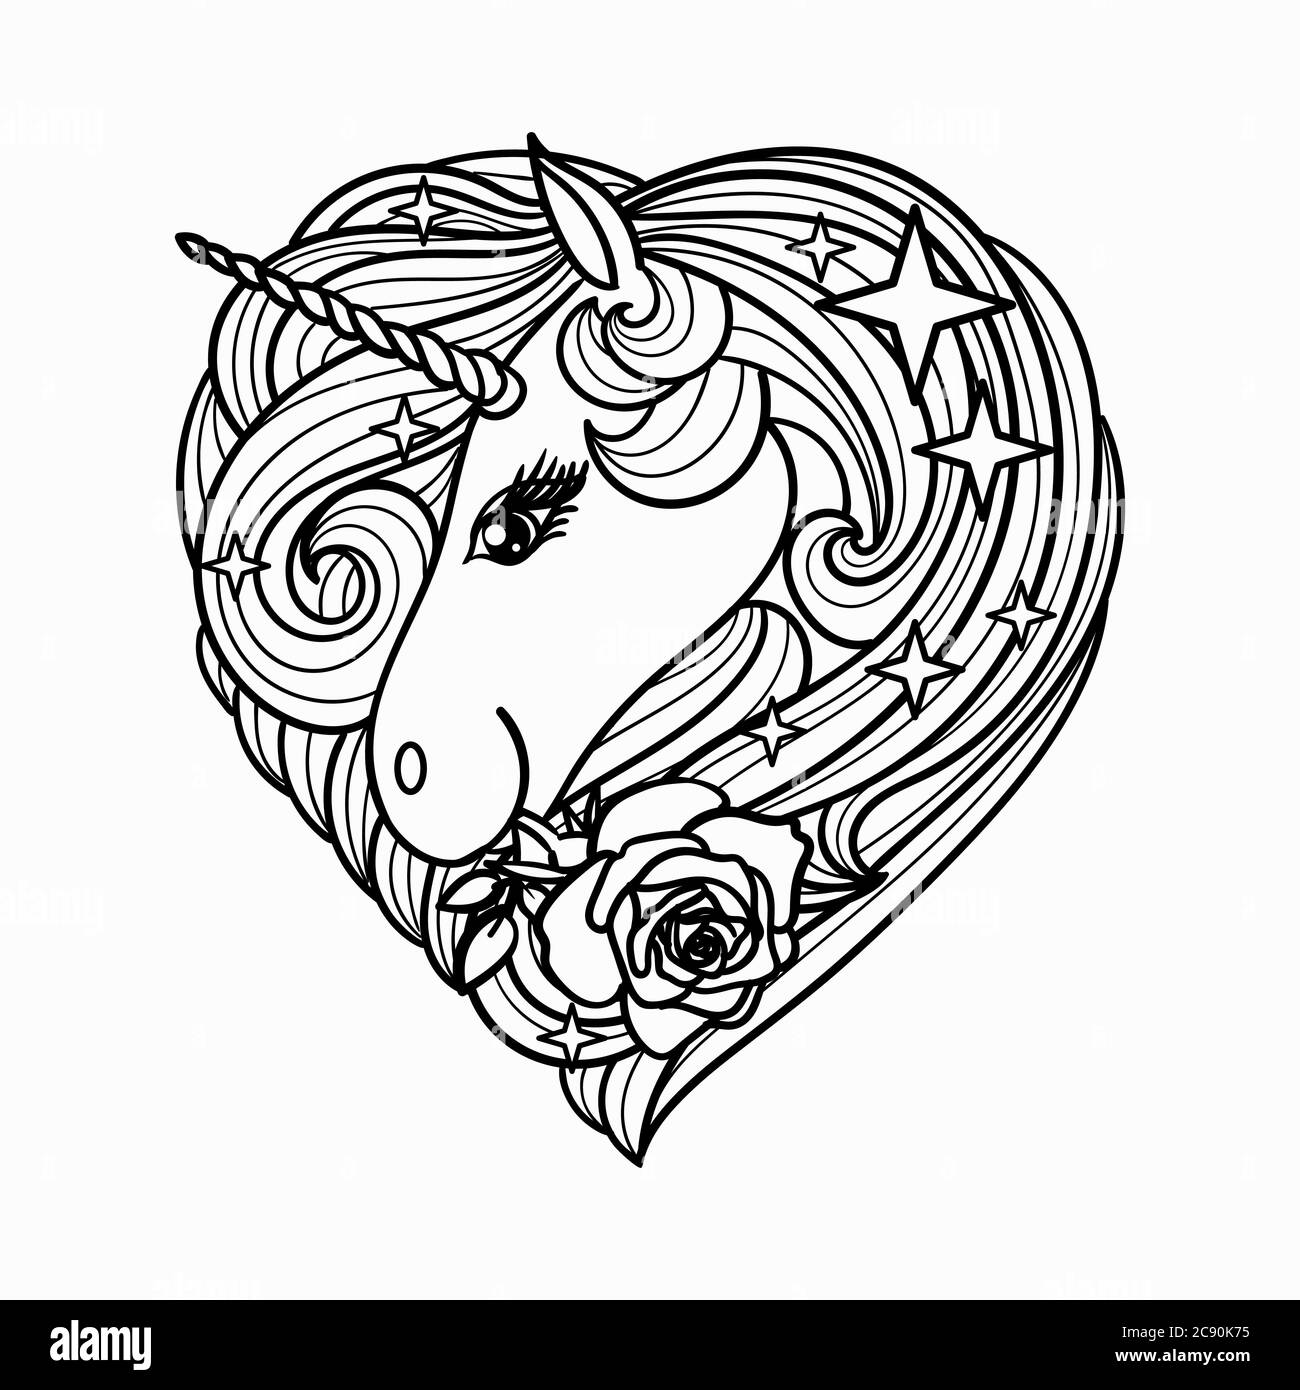 Cartoon Einhorn mit einer Rose. Stilisiert in Form eines Herzens. Handgezeichnete Liniendarstellung. Für Tattoo-Design, Färbung, Drucke, Poster. Vektor Stock Vektor